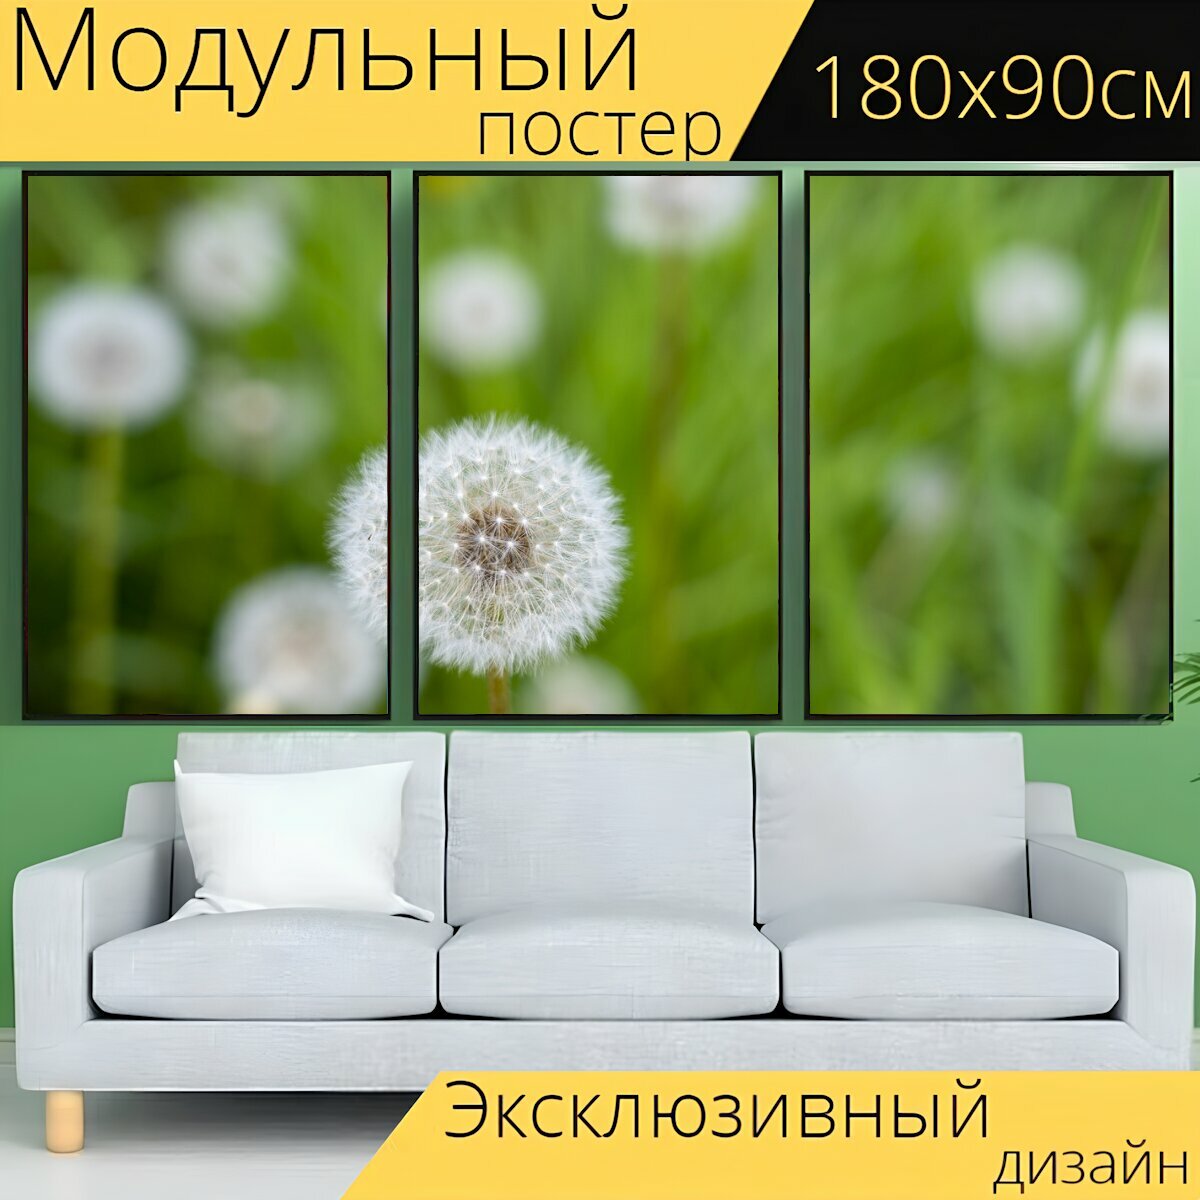 Модульный постер "Одуванчик, одуванчики, цветок" 180 x 90 см. для интерьера